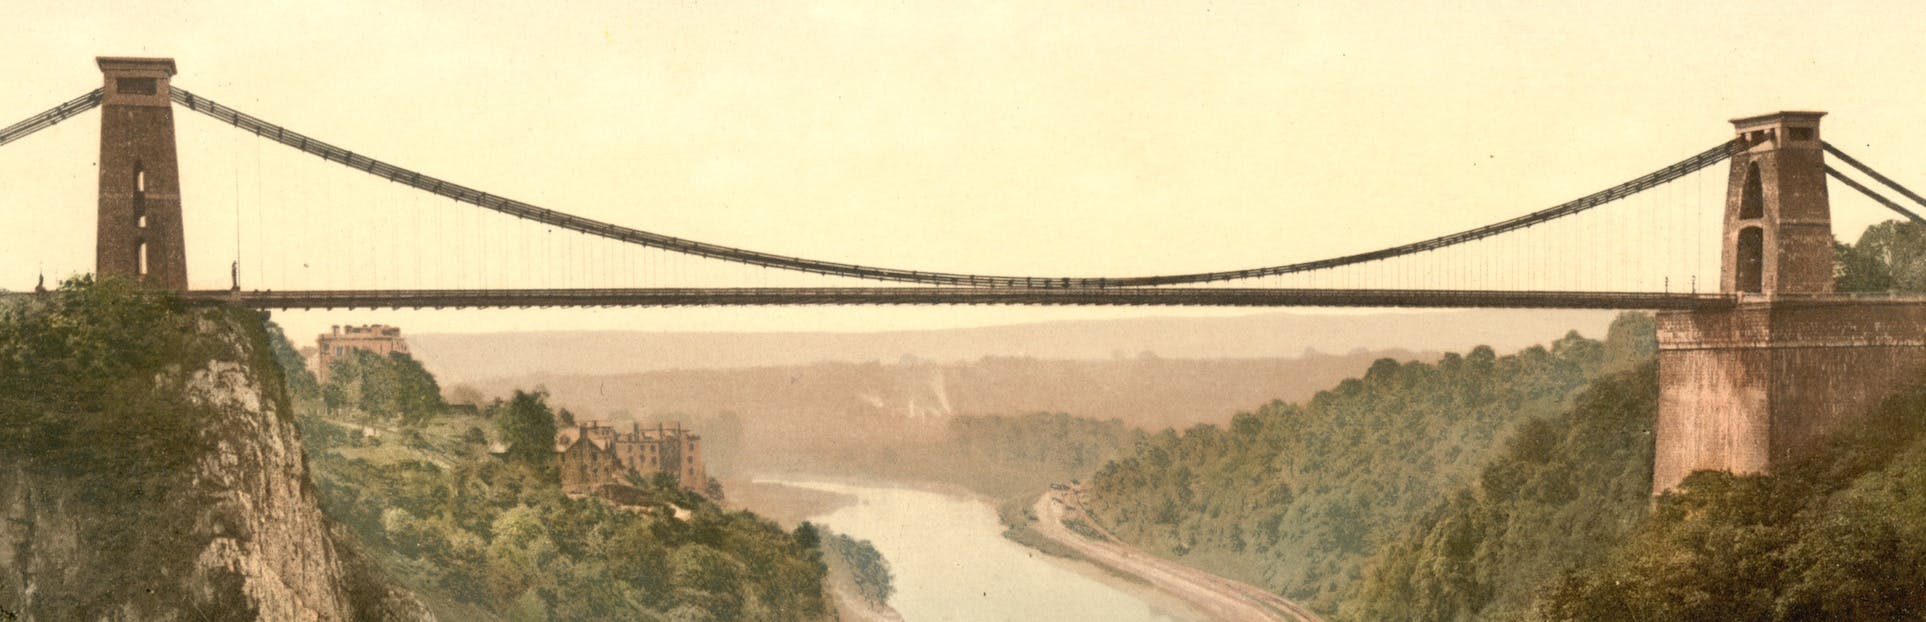 Découvrez le bateau et le pont de Brunel lors d'une visite audio autoguidée à Bristol